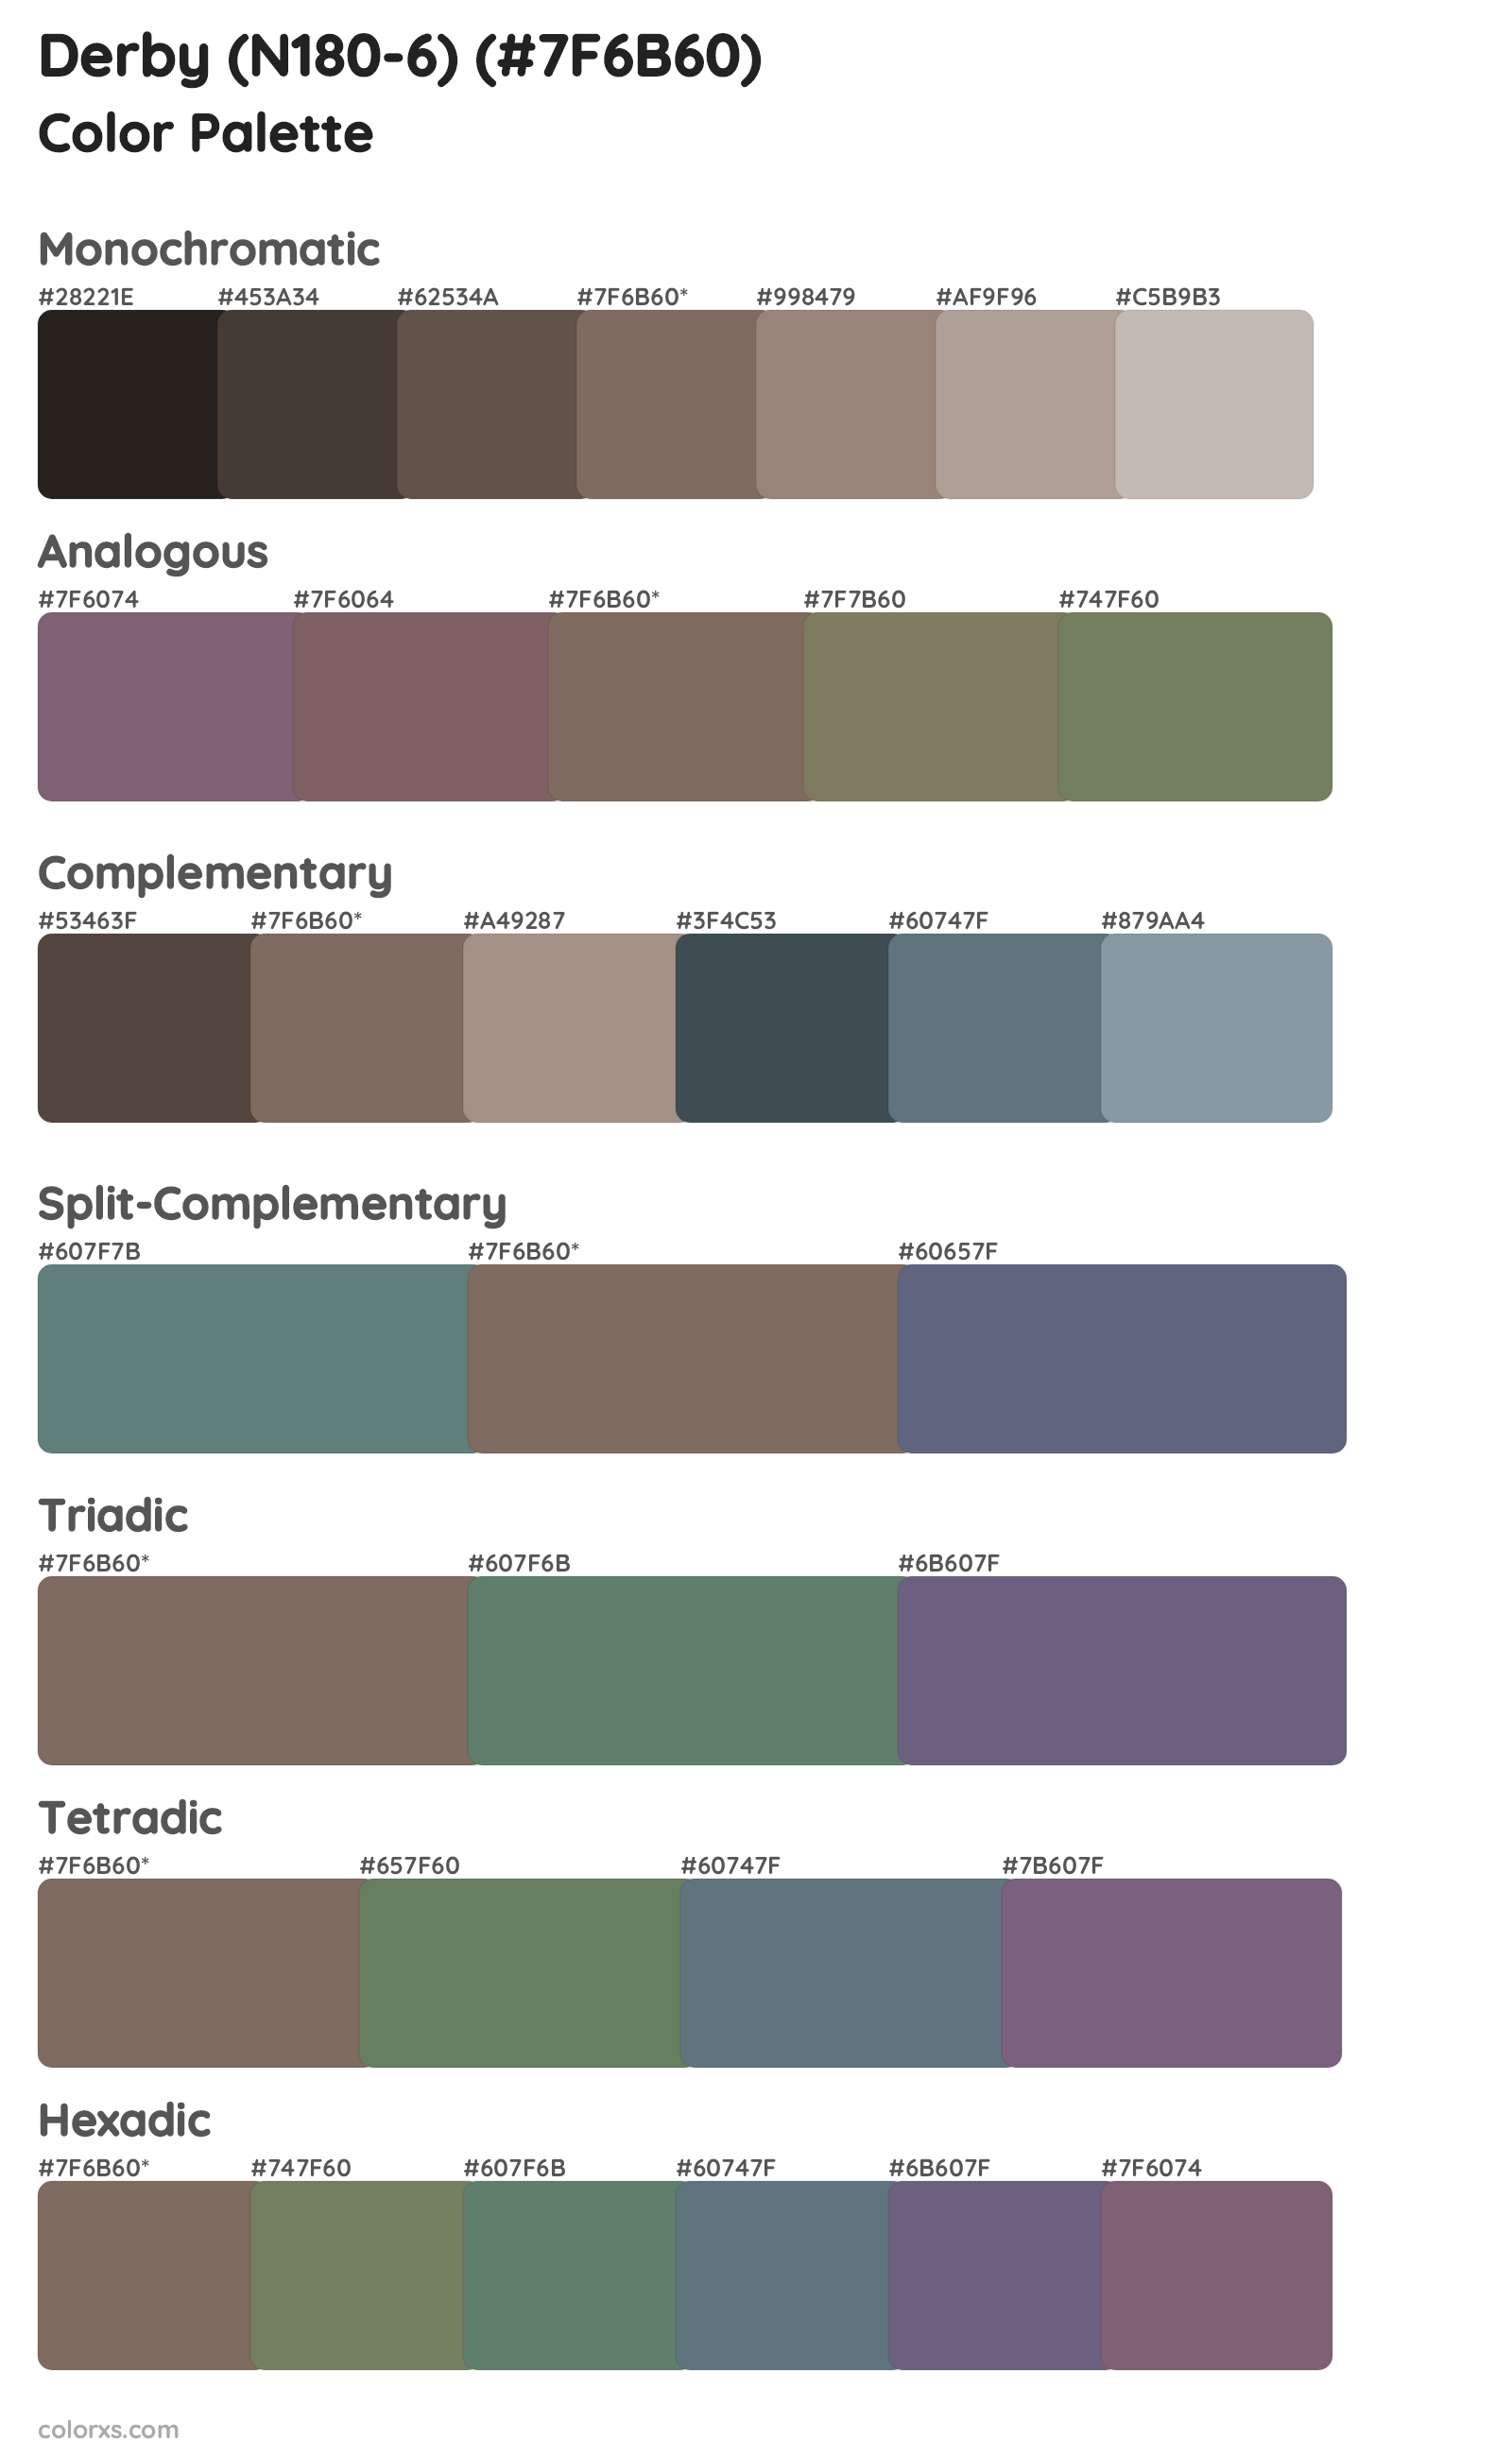 Derby (N180-6) Color Scheme Palettes